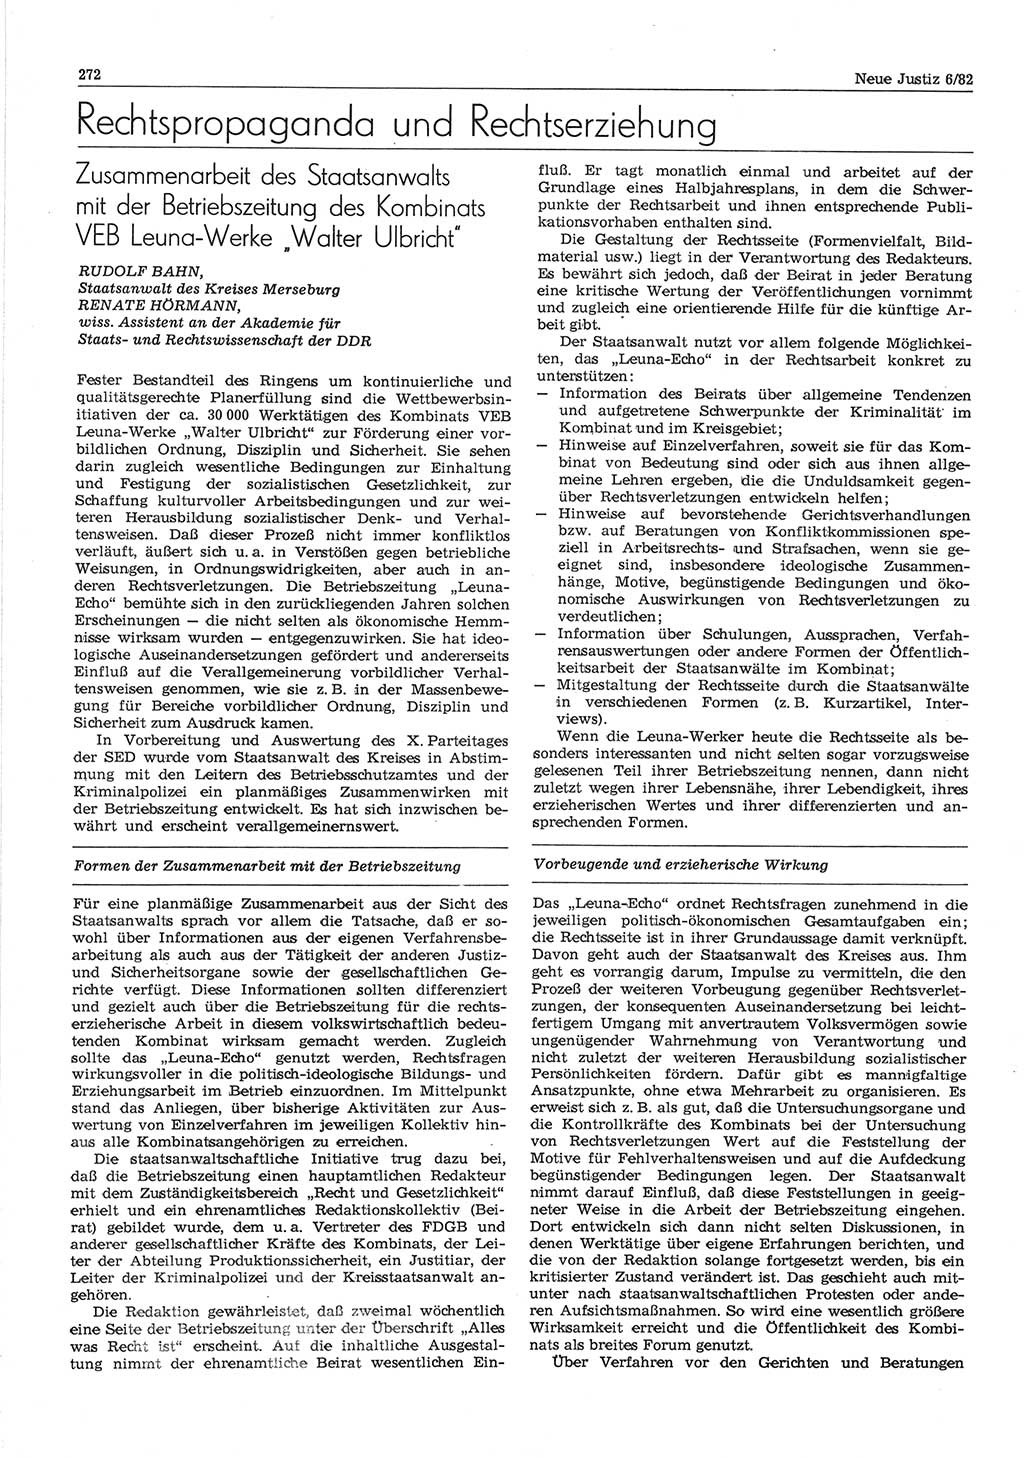 Neue Justiz (NJ), Zeitschrift für sozialistisches Recht und Gesetzlichkeit [Deutsche Demokratische Republik (DDR)], 36. Jahrgang 1982, Seite 272 (NJ DDR 1982, S. 272)